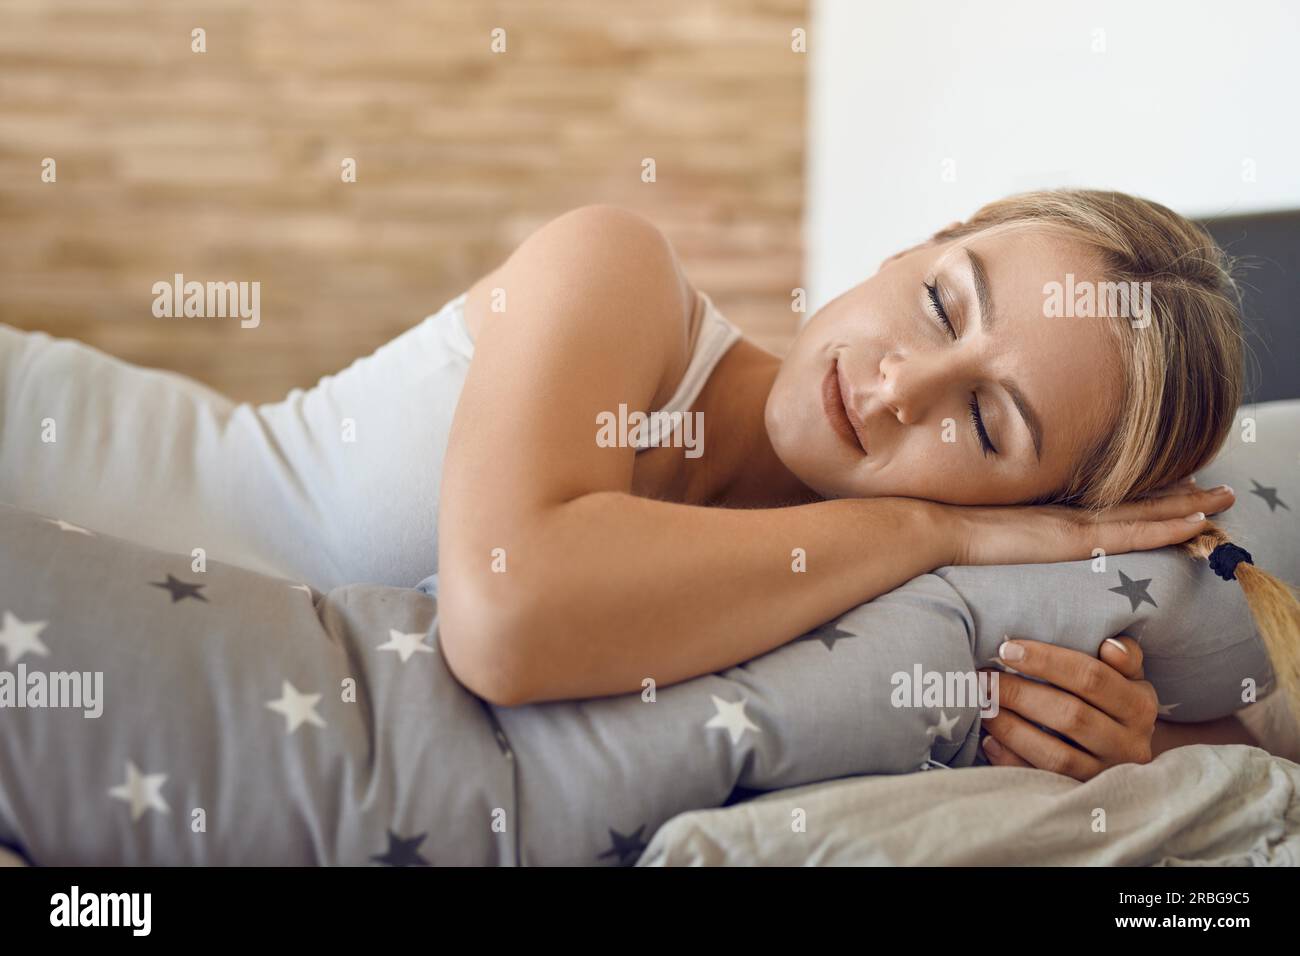 Bella giovane donna incinta che dorme con uno speciale cuscino di supporto che corre per tutta la lunghezza del suo corpo in una vista ravvicinata e serena Foto Stock